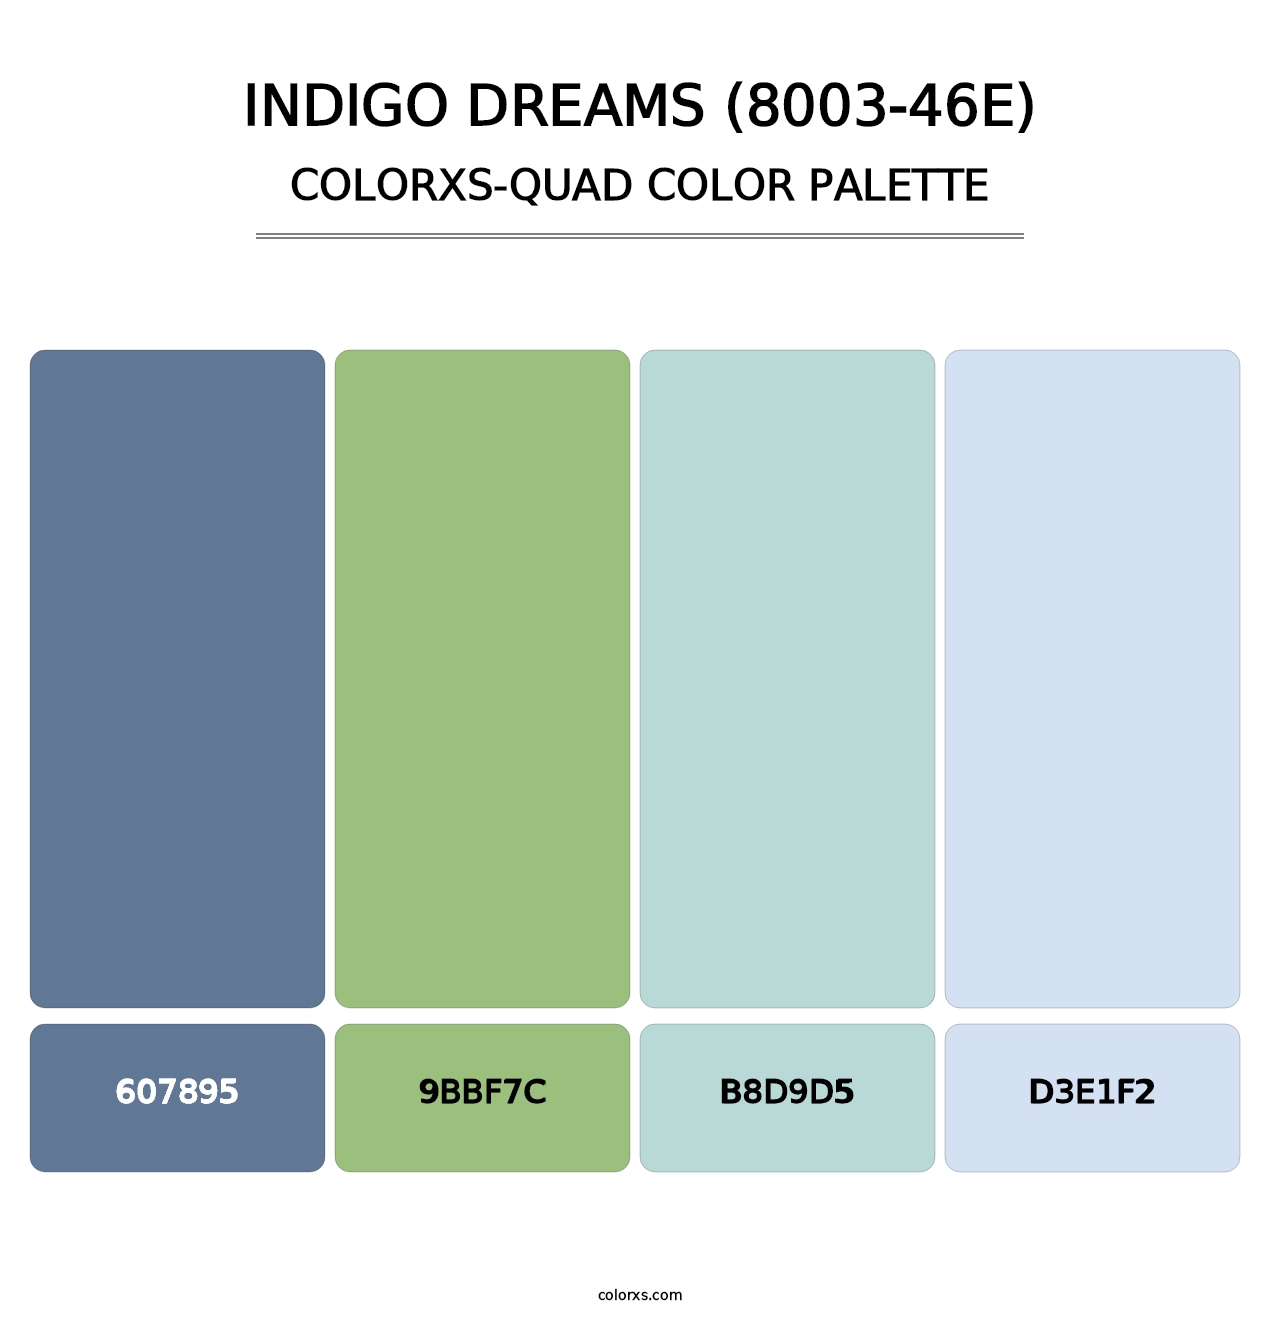 Indigo Dreams (8003-46E) - Colorxs Quad Palette